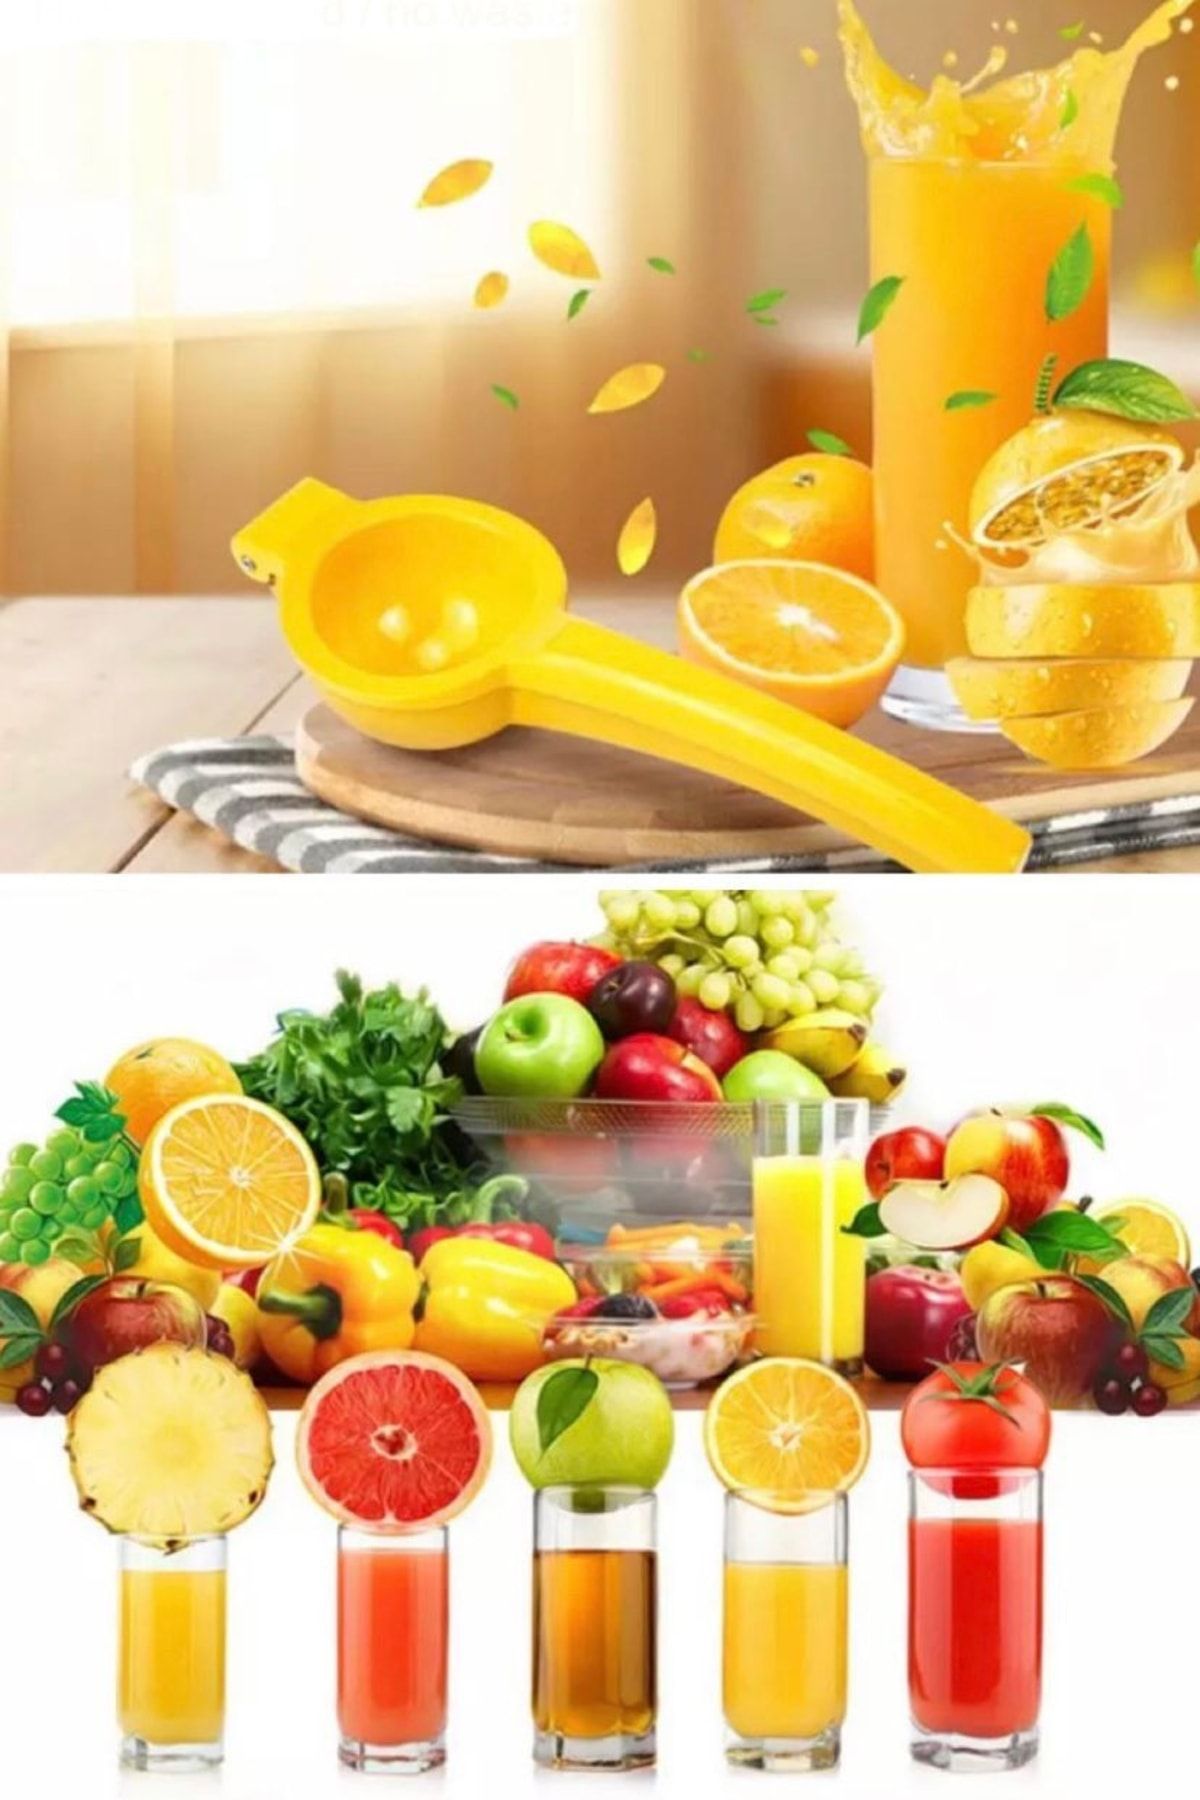 Utelips Paslanmaz Çelik Kolay Pratik Limon Narenciye Mandalina Portakal Sıkacağı Ziyan Etmez Komple Meyve Su